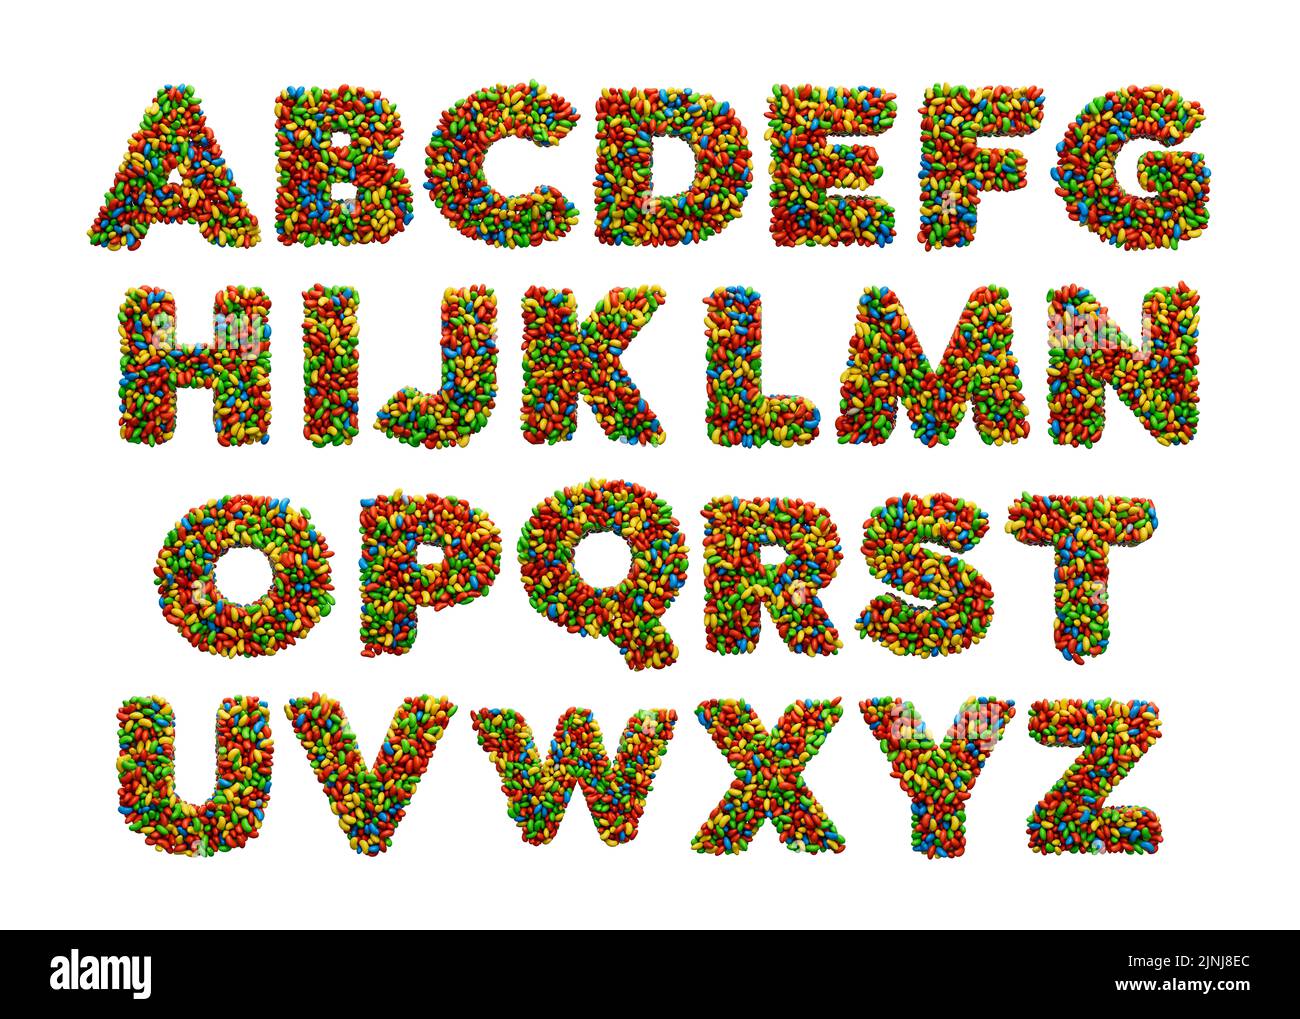 Eine 3D Darstellung des bunten englischen Alphabets von A bis Z auf weißem Hintergrund Stockfoto